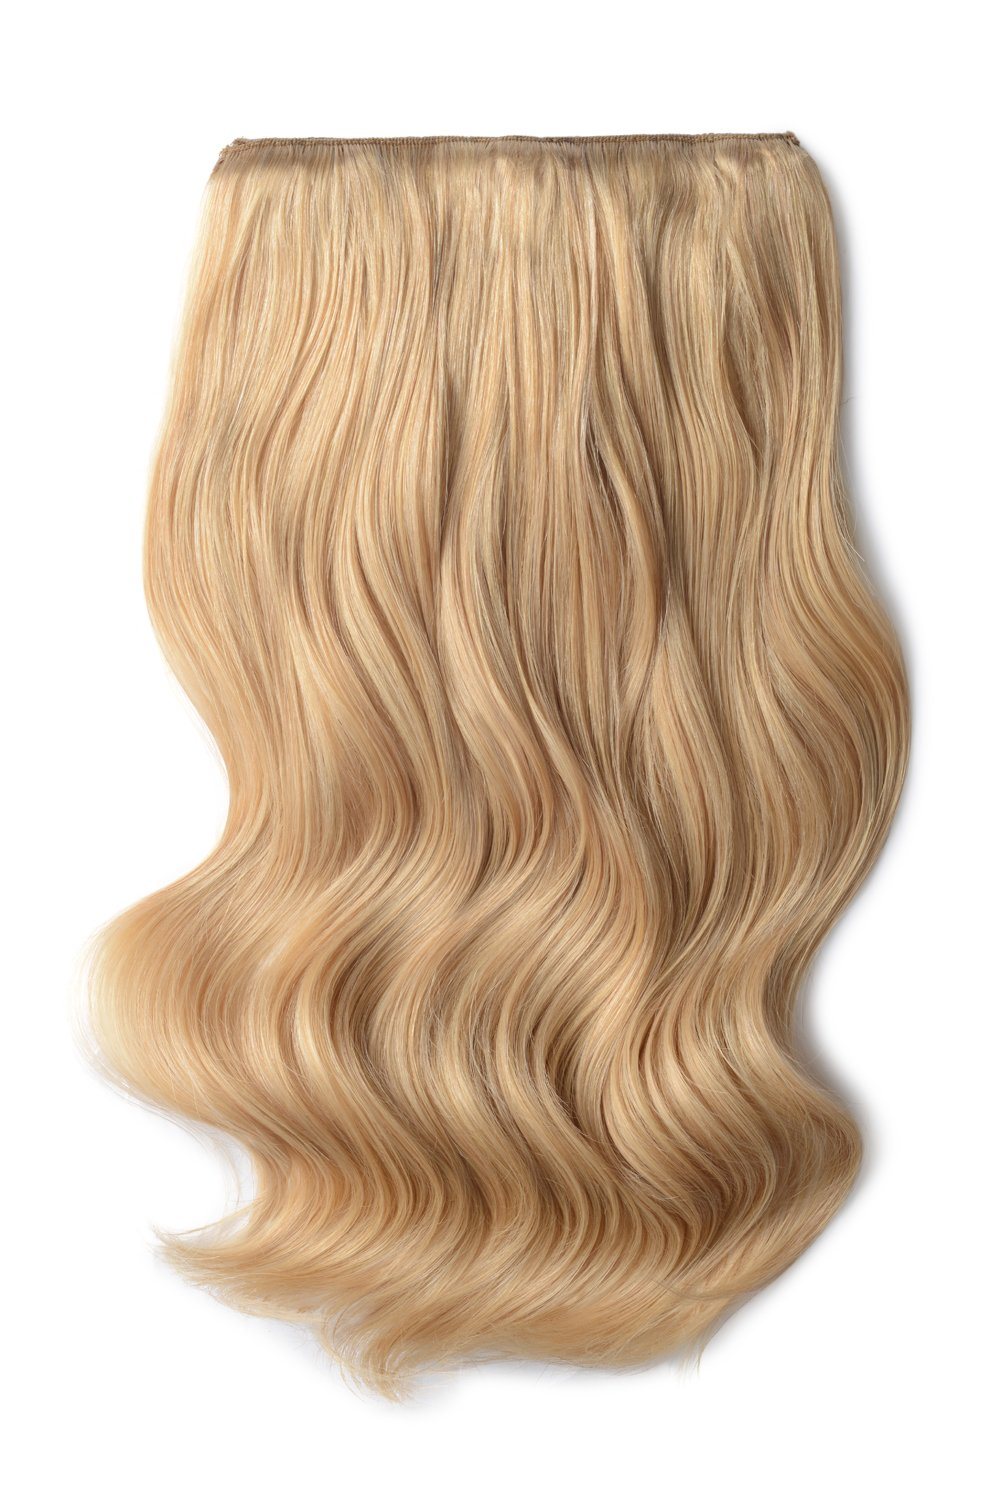 Light Golden Blonde Hair Extensions Cliphair Cliphair Uk